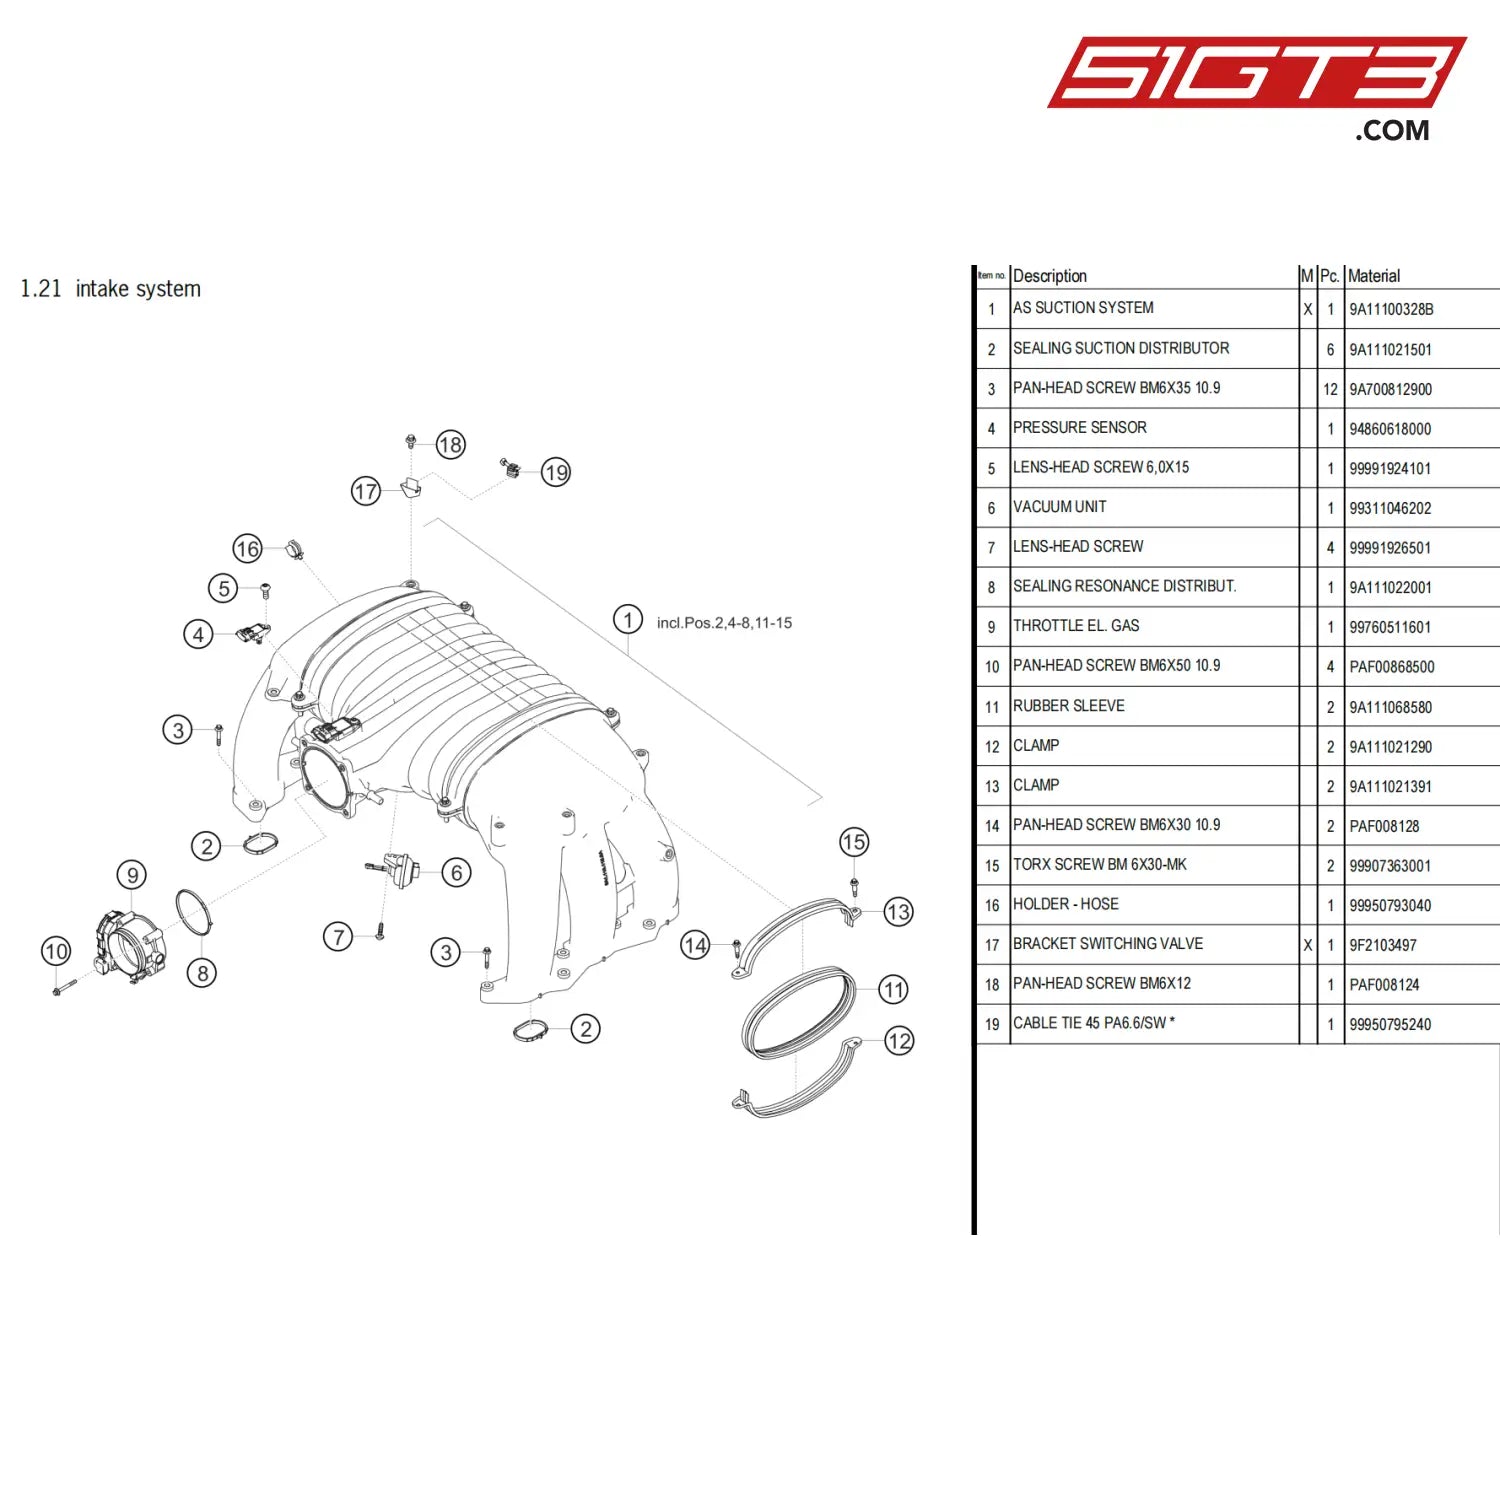 Lens-Head Screw 6 0X15 - 99991924101 [Porsche 718 Cayman Gt4 Clubsport] Intake System